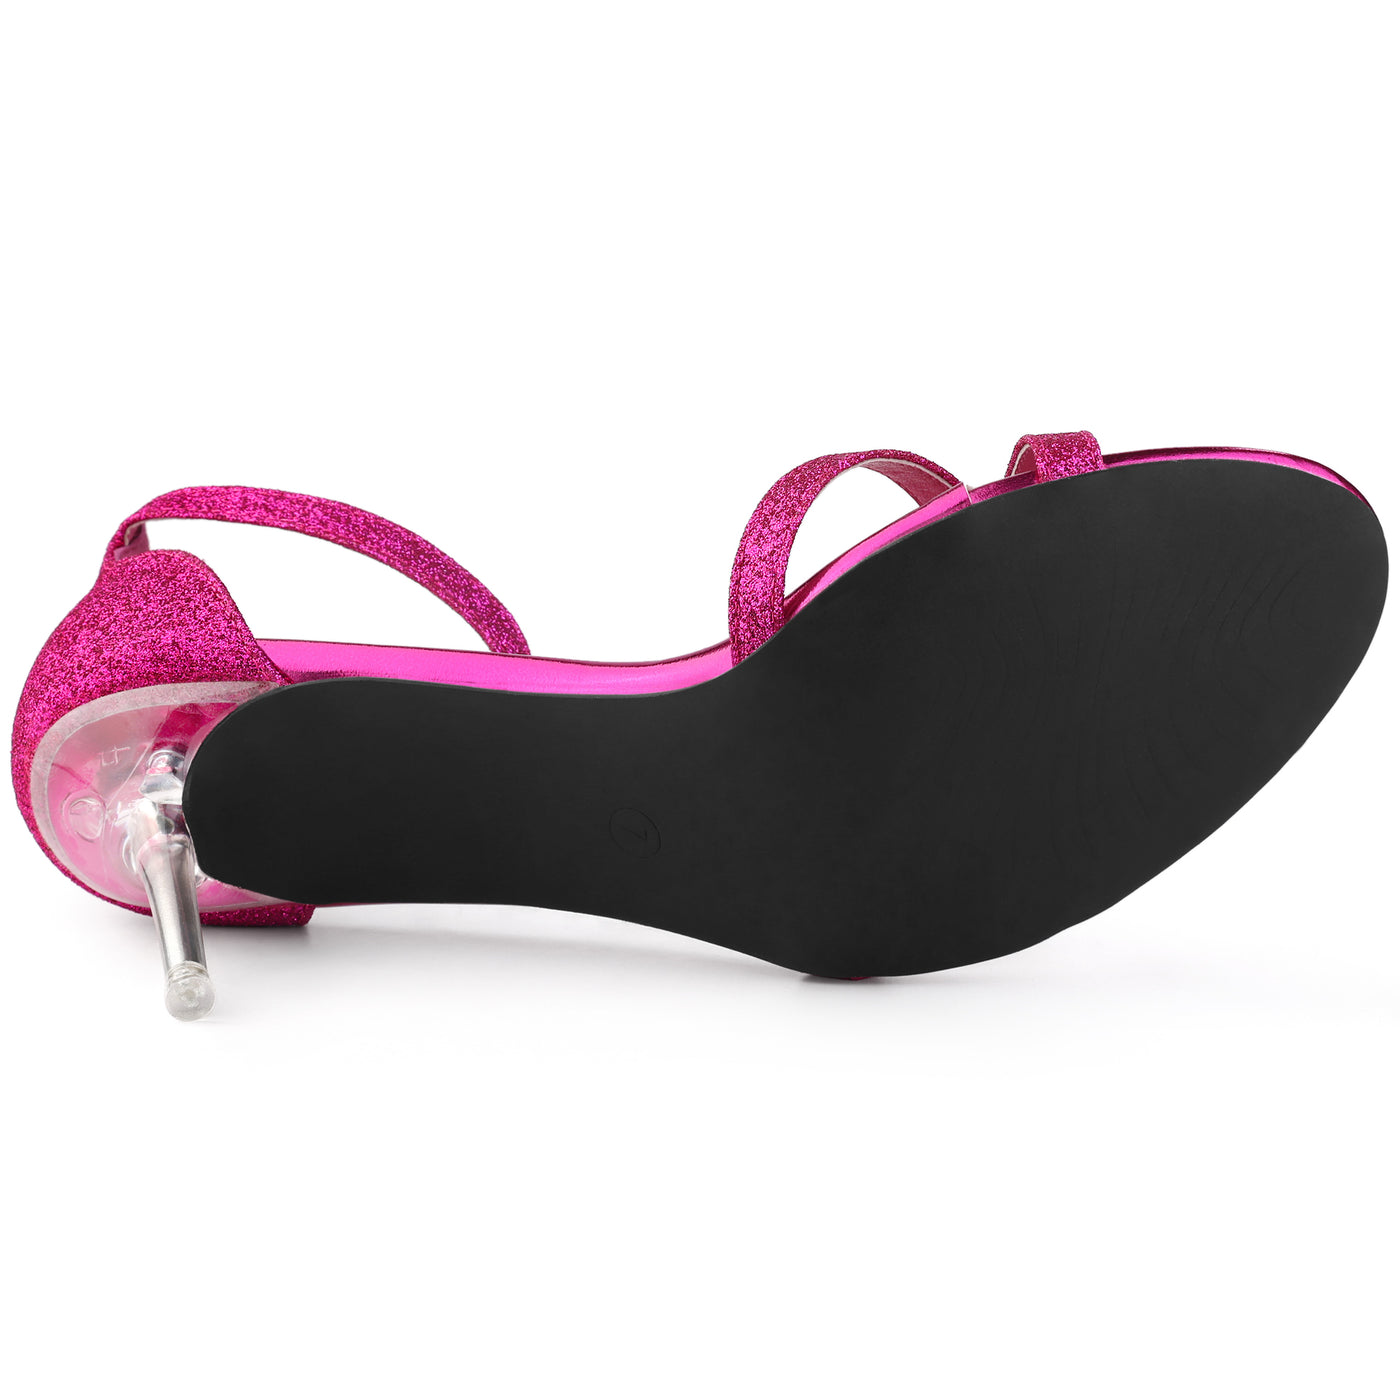 Allegra K Women's Glitter Ankle Straps Stiletto Clear Heels Sandals